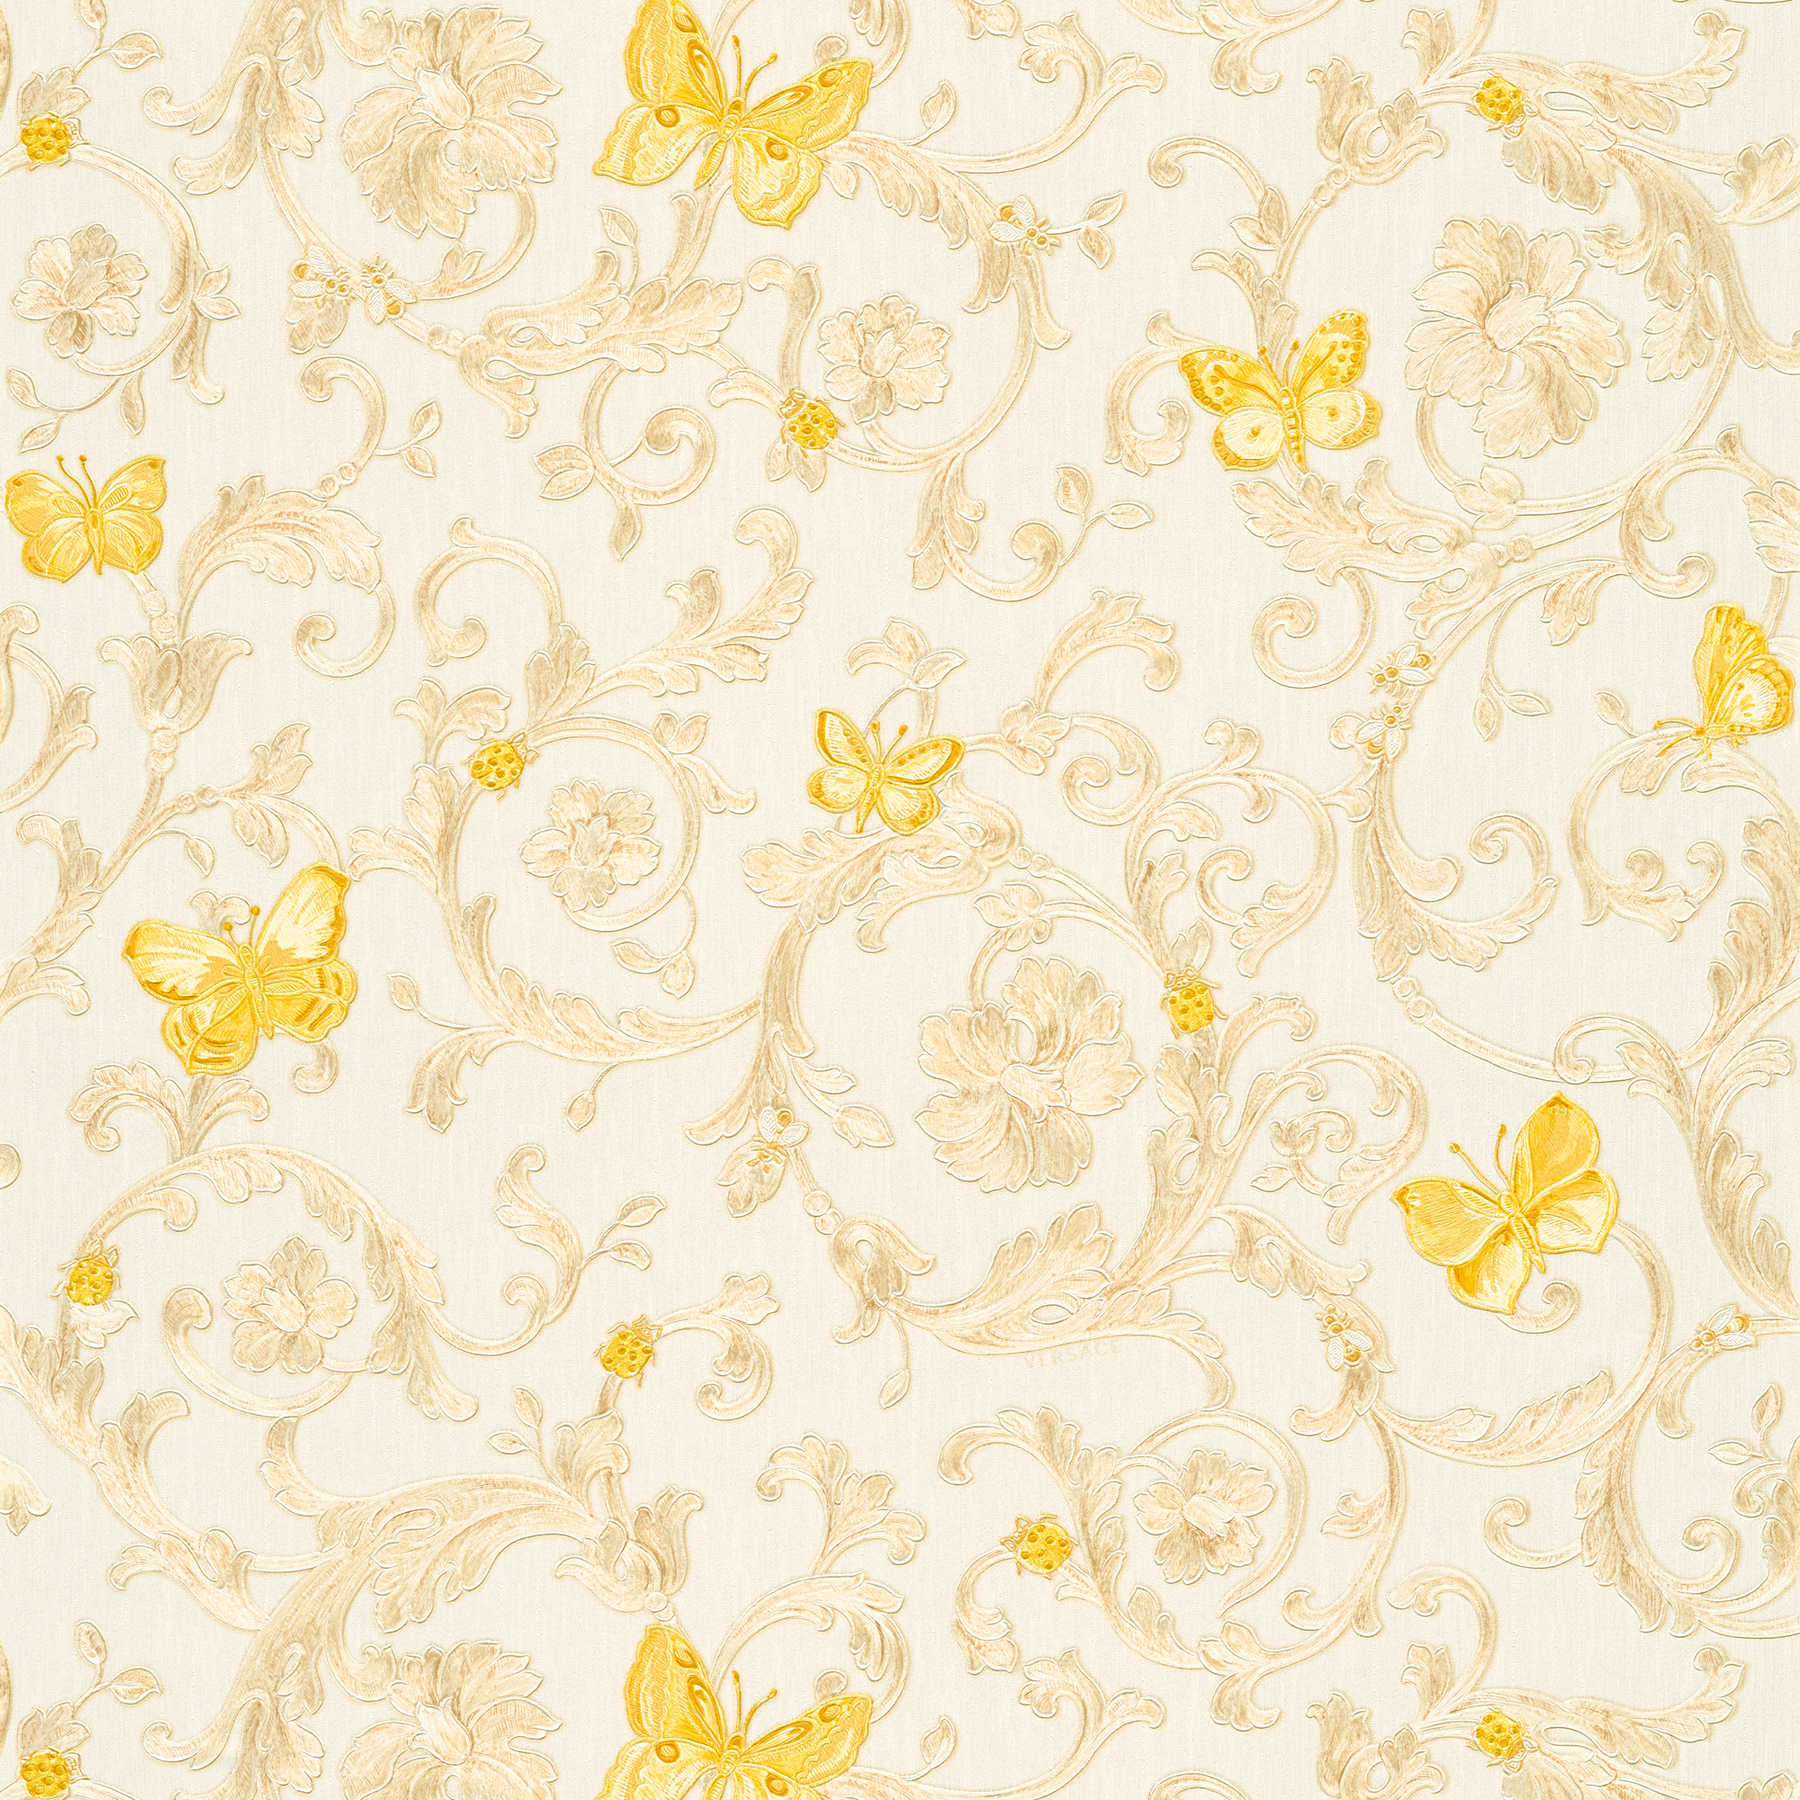         Non-woven wallpaper VERSACE with gold pattern & butterflies - cream, gold
    